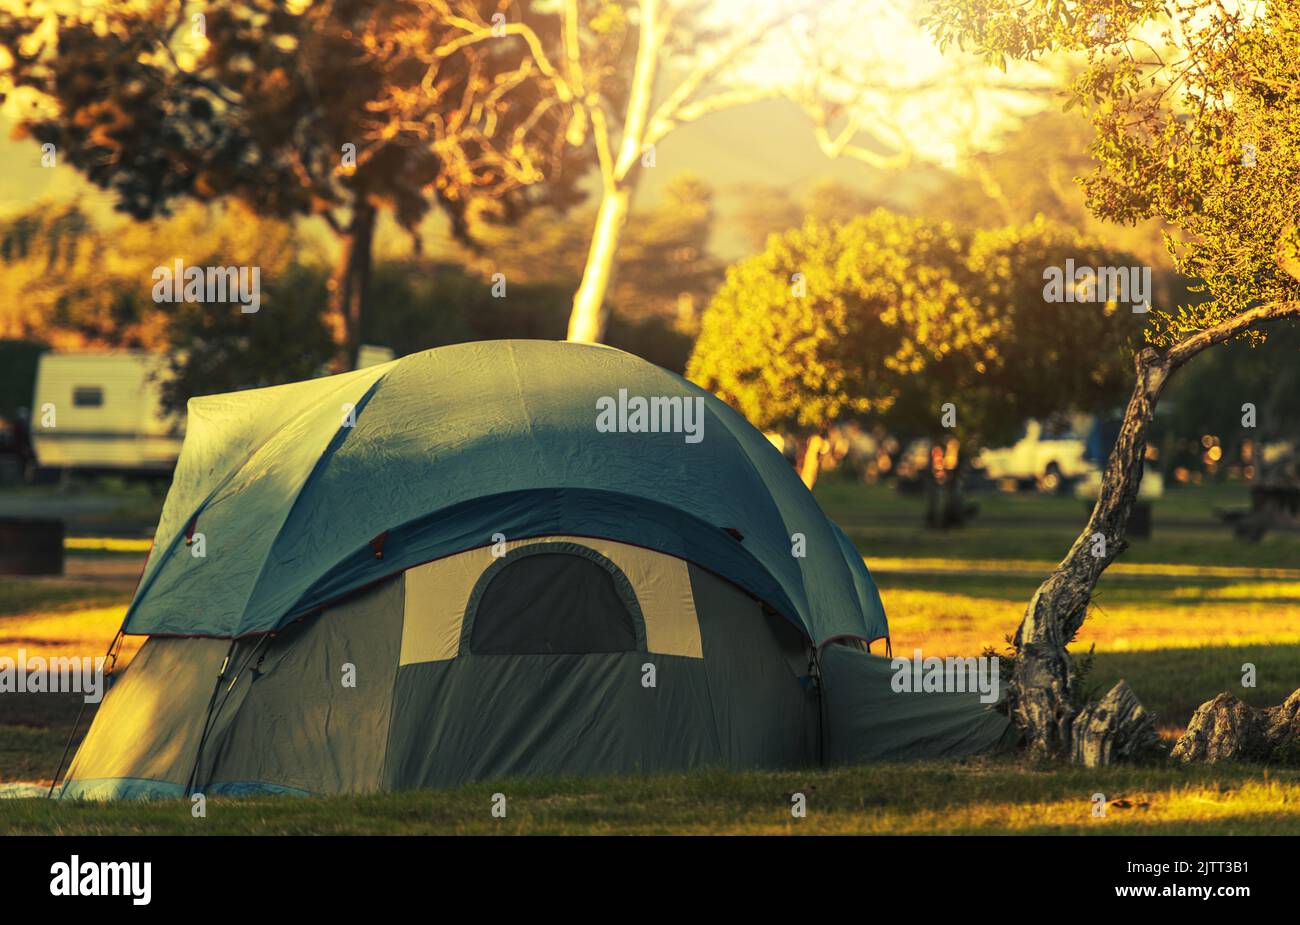 Tenda moderna in colore verde cachi con copertura di protezione del tetto supplementare accatchiata e fissata su un campeggio. Autunno Foliage in background. Campeggio e. Foto Stock